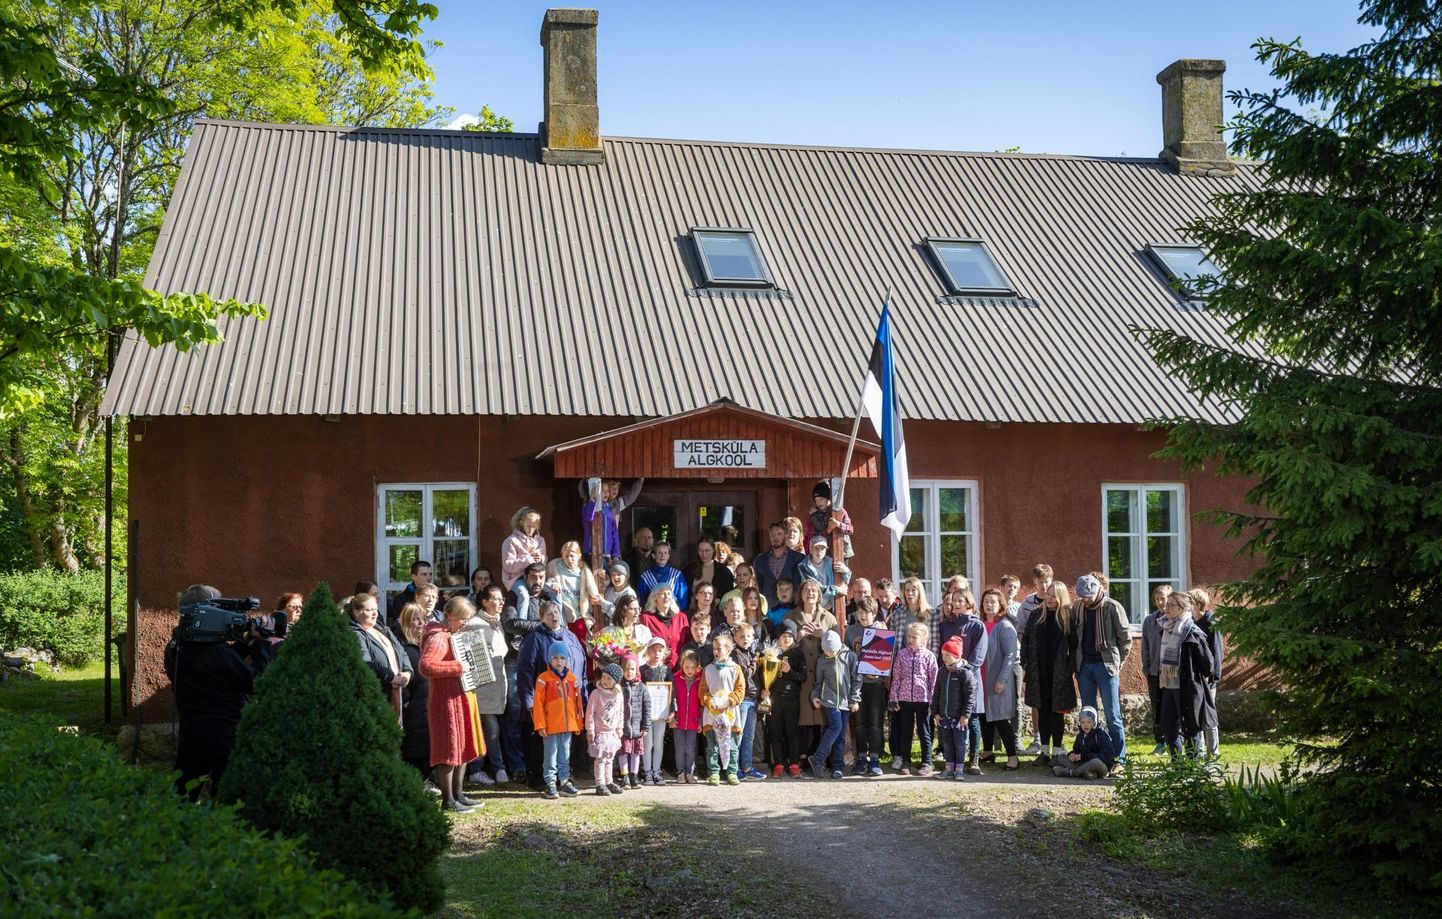 Aasta kool 2023 tiitli pälvis väike Metsküla algkool Pärnumaal Lääneranna vallas. Koolipere käib endiselt kohut vallaga, et vältida sulgemist.